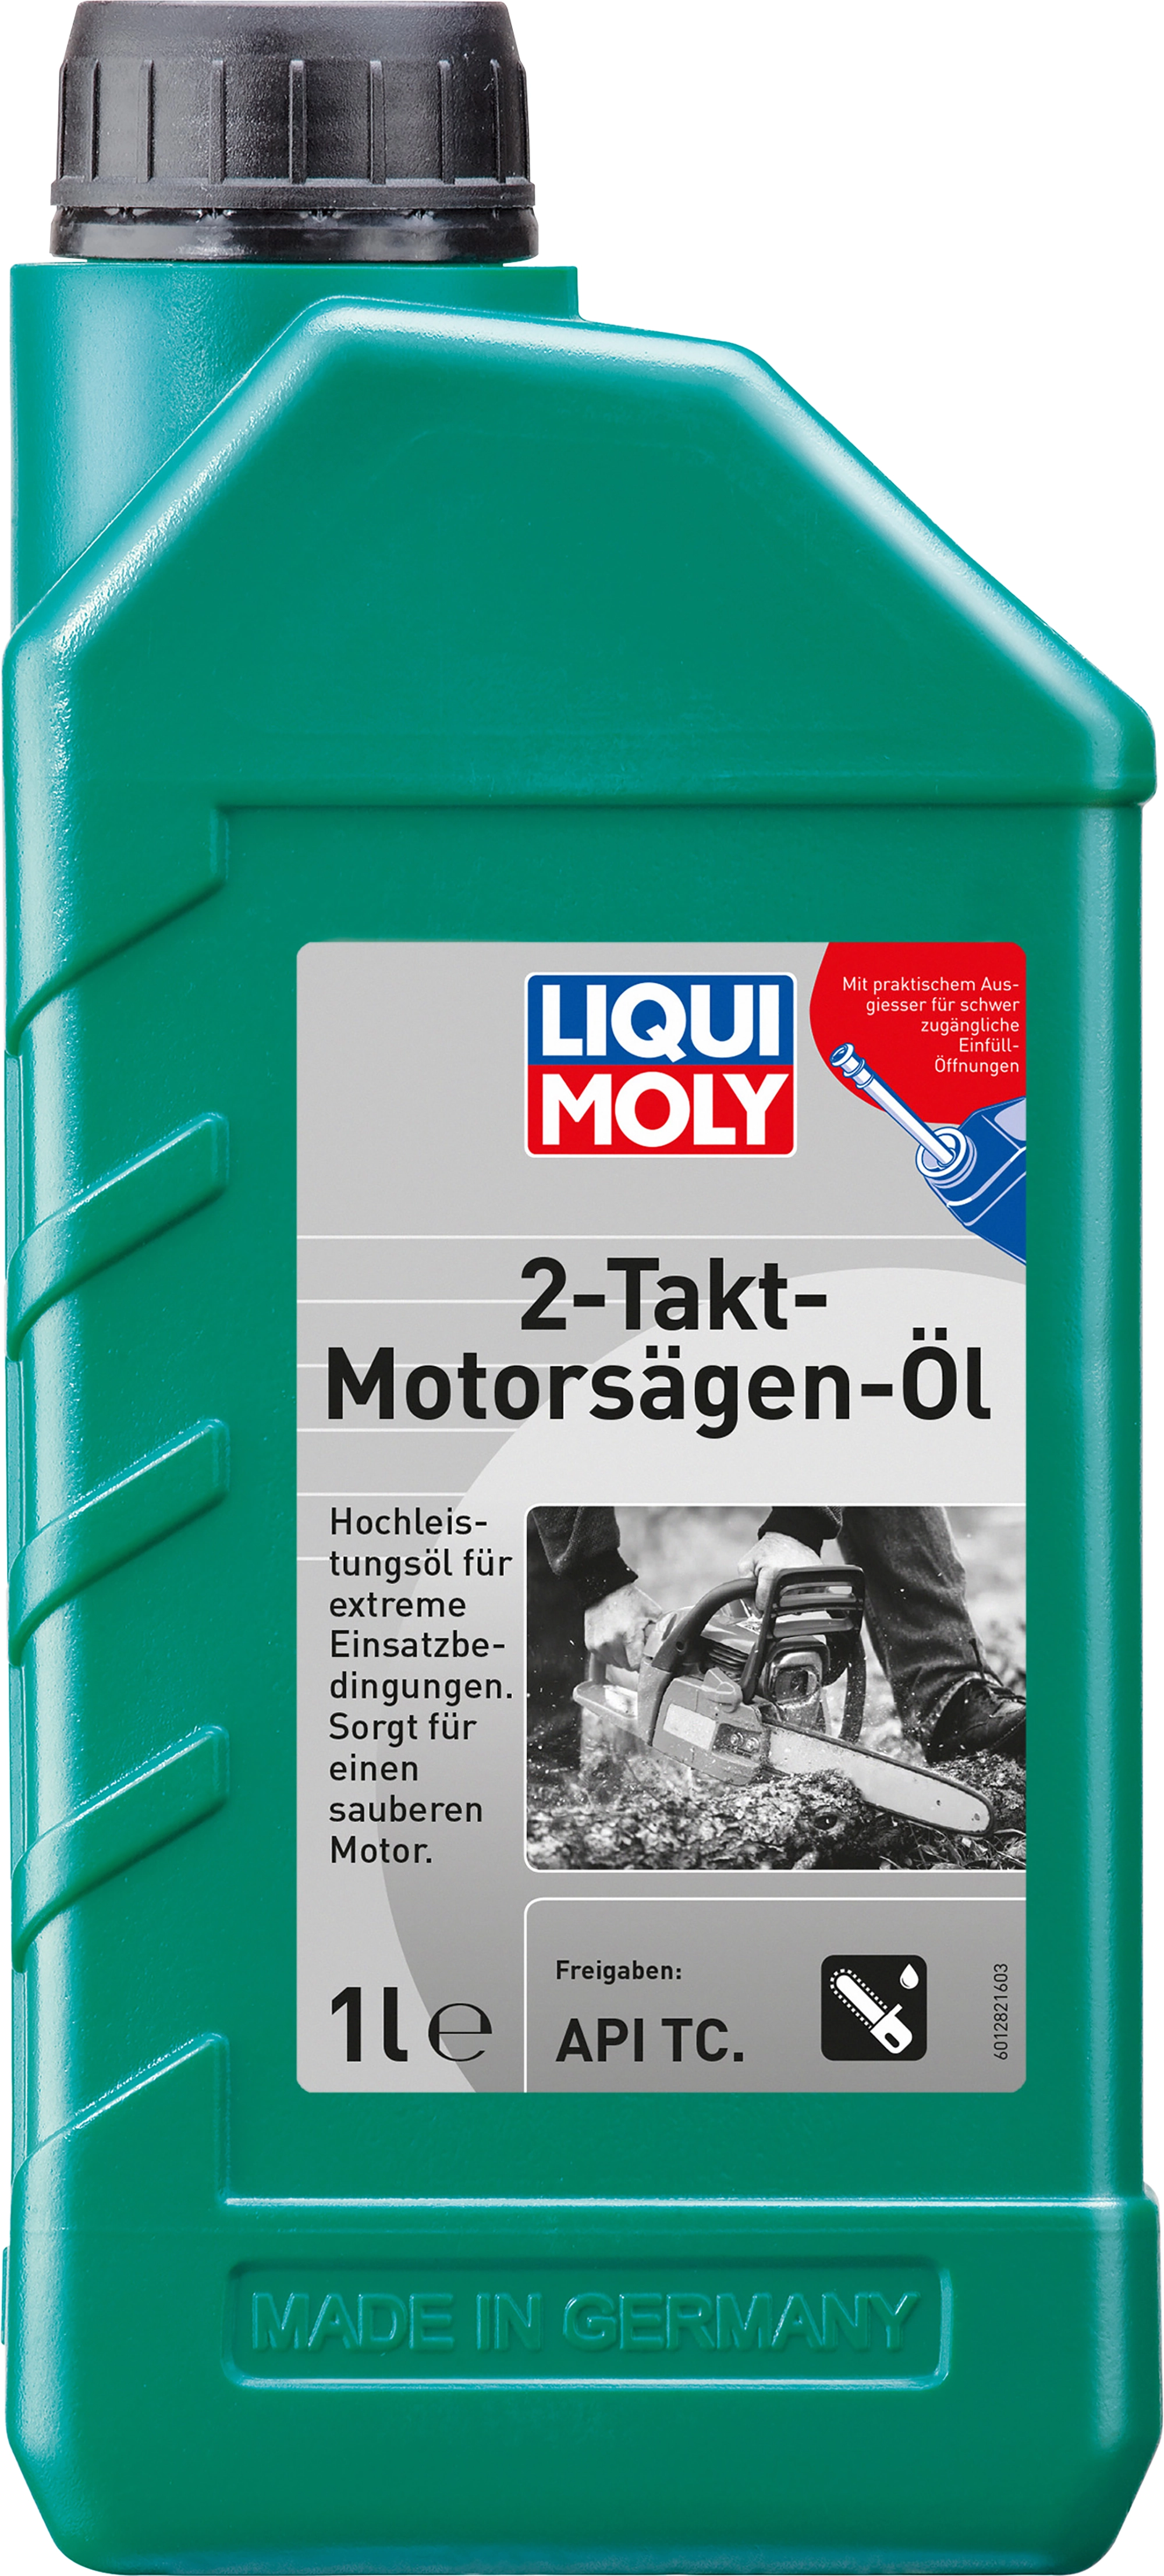 LIQUI MOLY Bio Sägekettenöl, 1 L, Gartengeräte-Öl